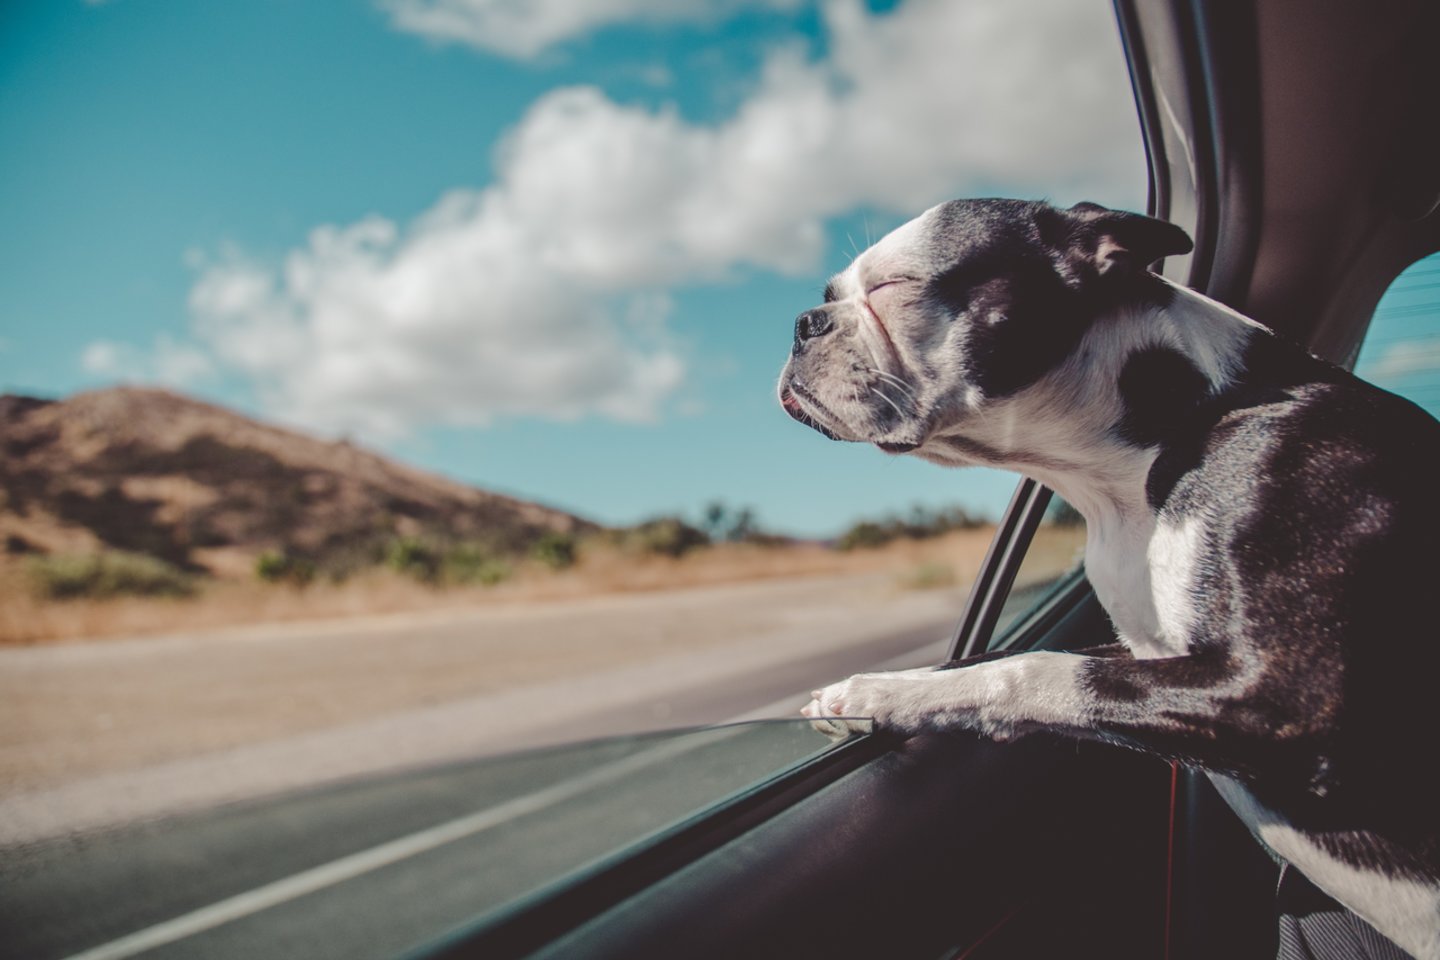 Daugelis vairuotojų automobiliuose įsijungia oro kondicionierių, kad nereiktų važiuoti pravertu langu ir kelionė būtų komfortiška.<br>Avi Richards/Unsplash nuotr.